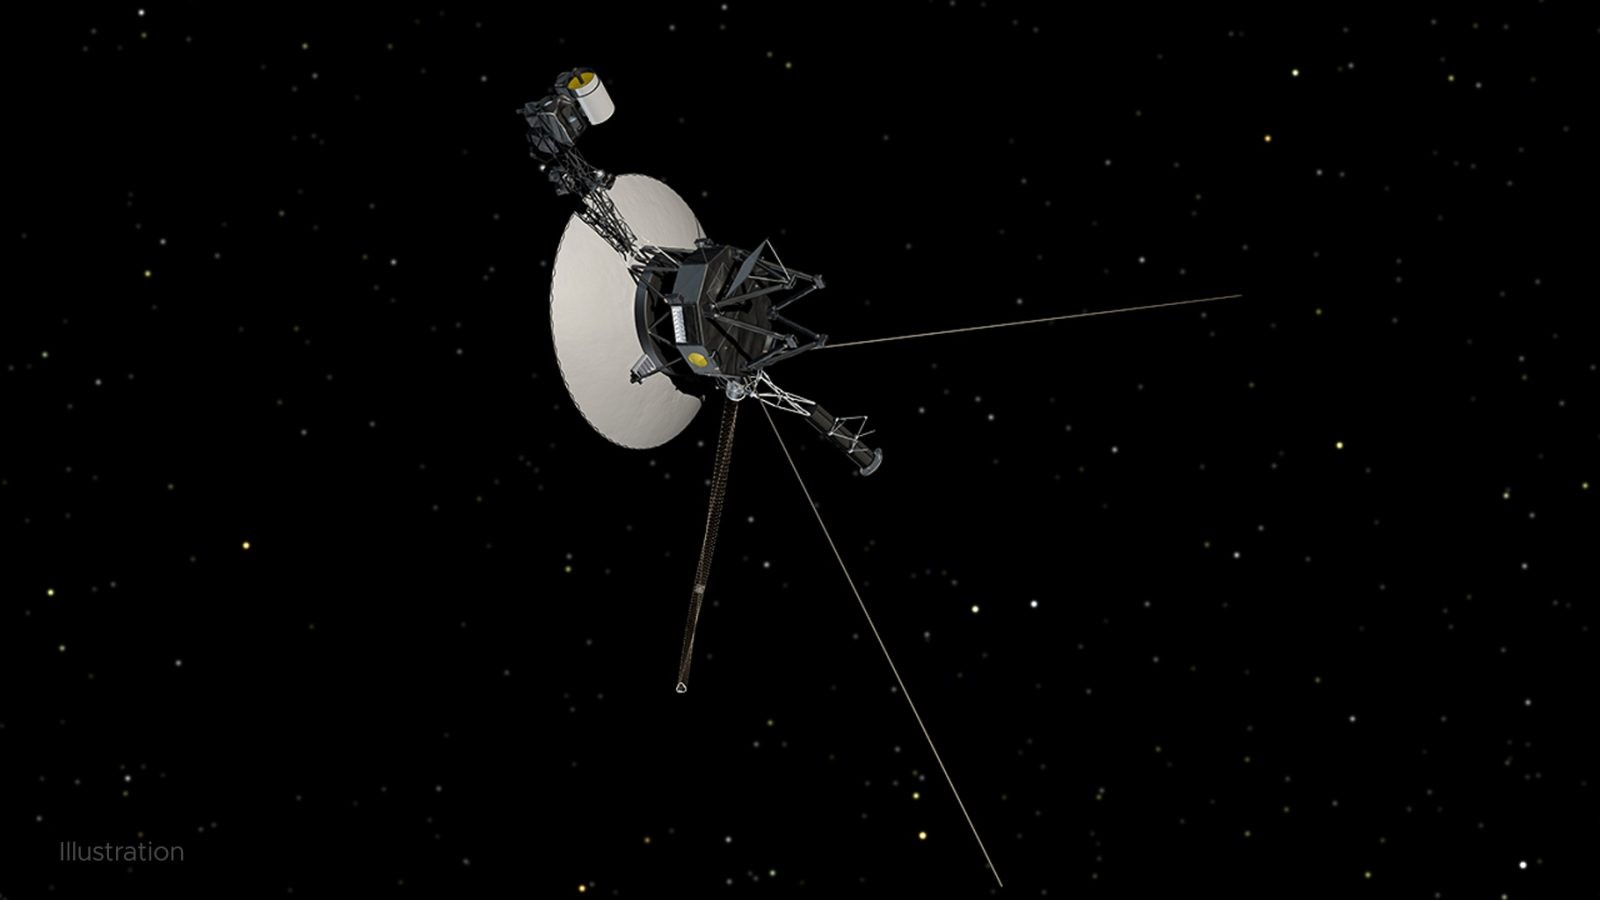 Sonda Voyager hałasuje w kosmosie. Ktoś mógł ją usłyszeć